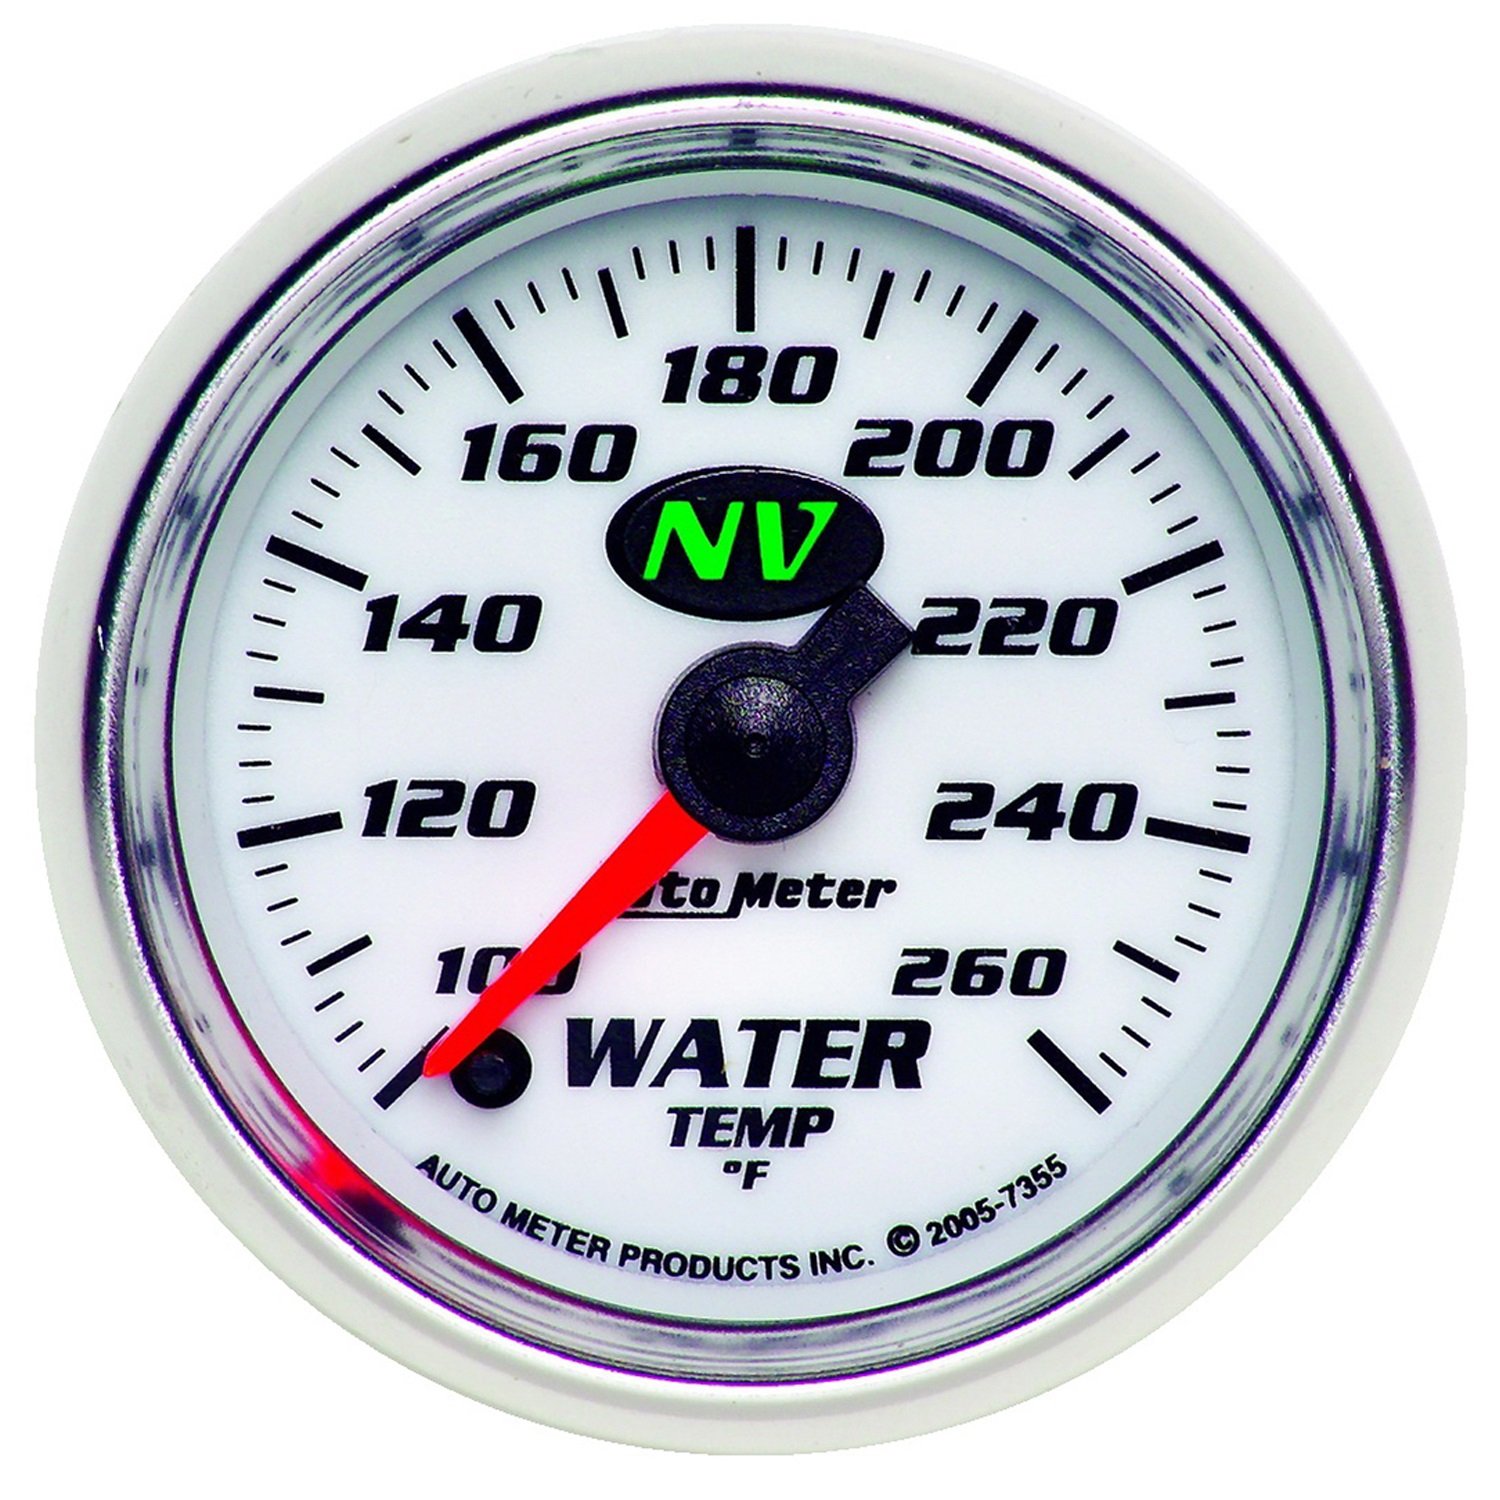 21/16IN WATER TEMP 100 260F FSE NV